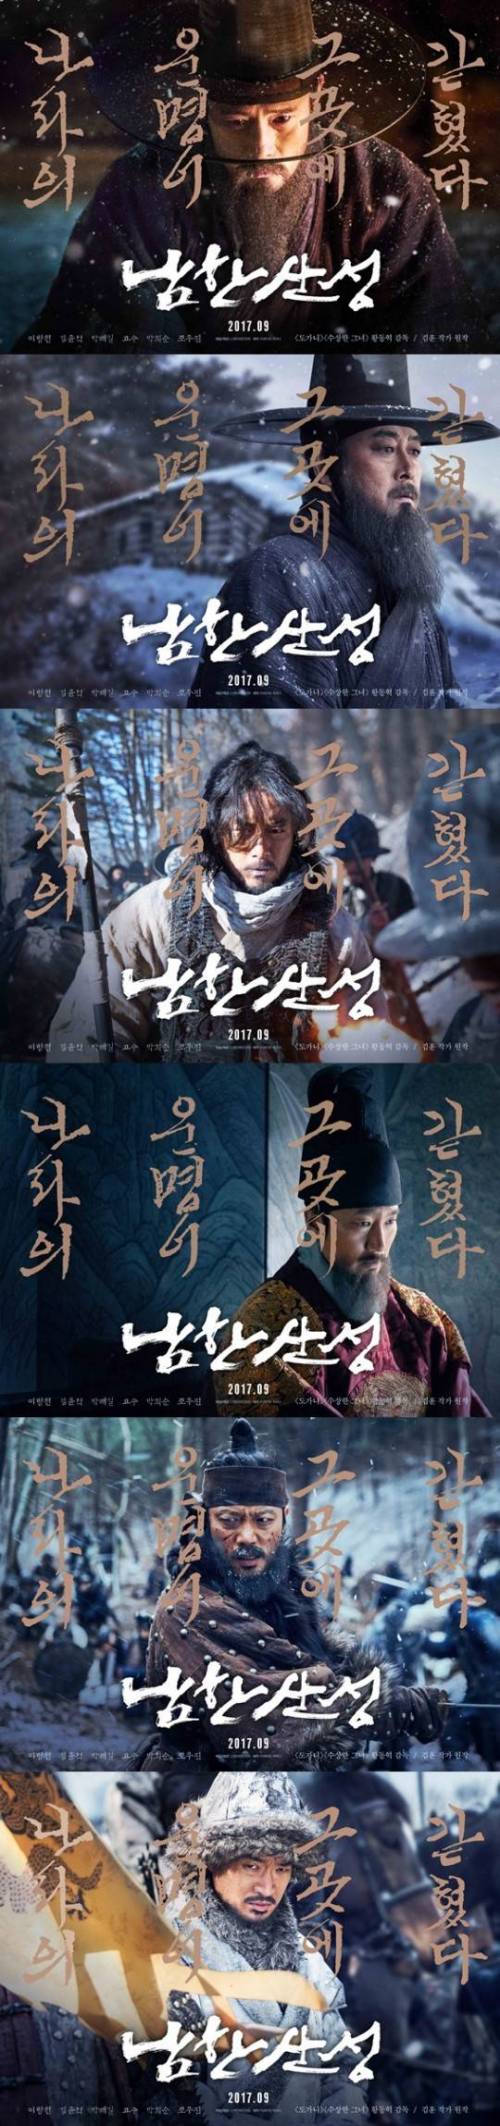 영화 남한산성 포스터.jpg